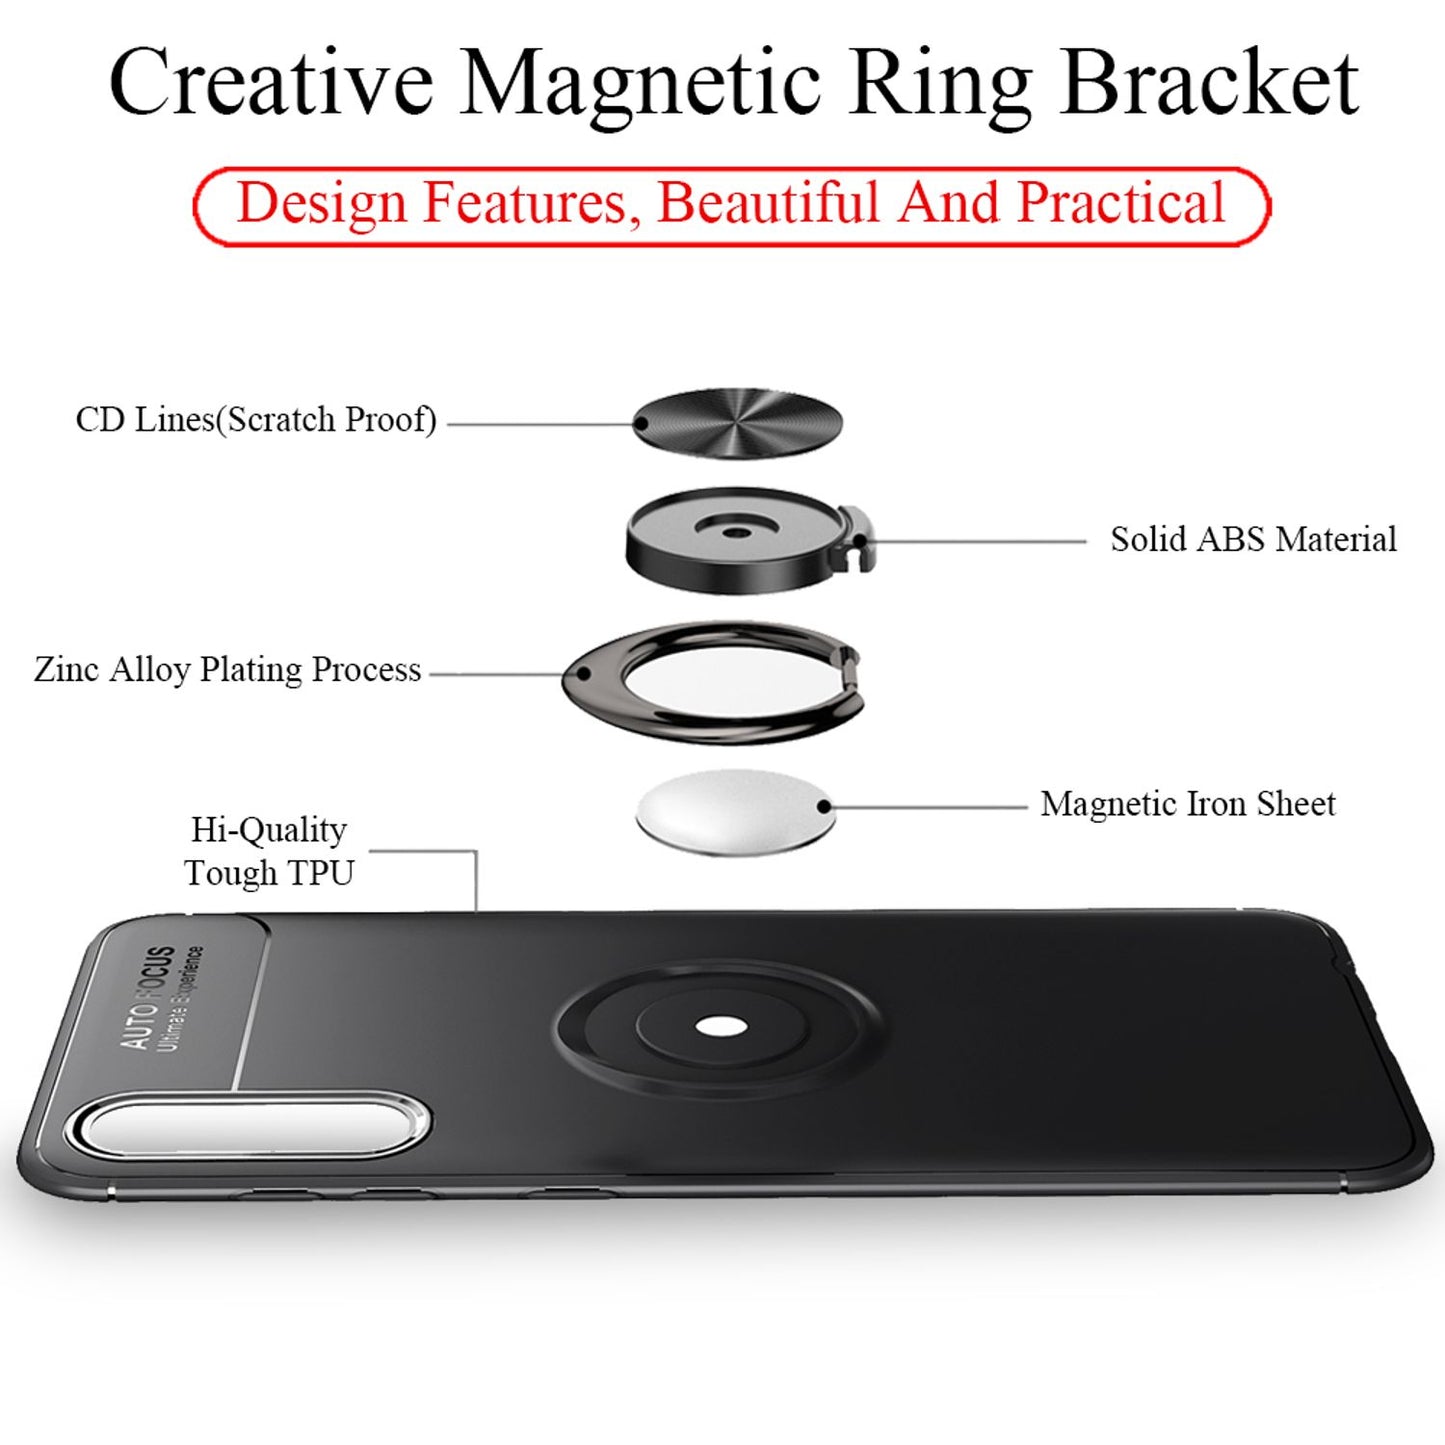 360° Ring Handy Hülle für Samsung Galaxy A50, Case Cover Schutz Tasche Bumper